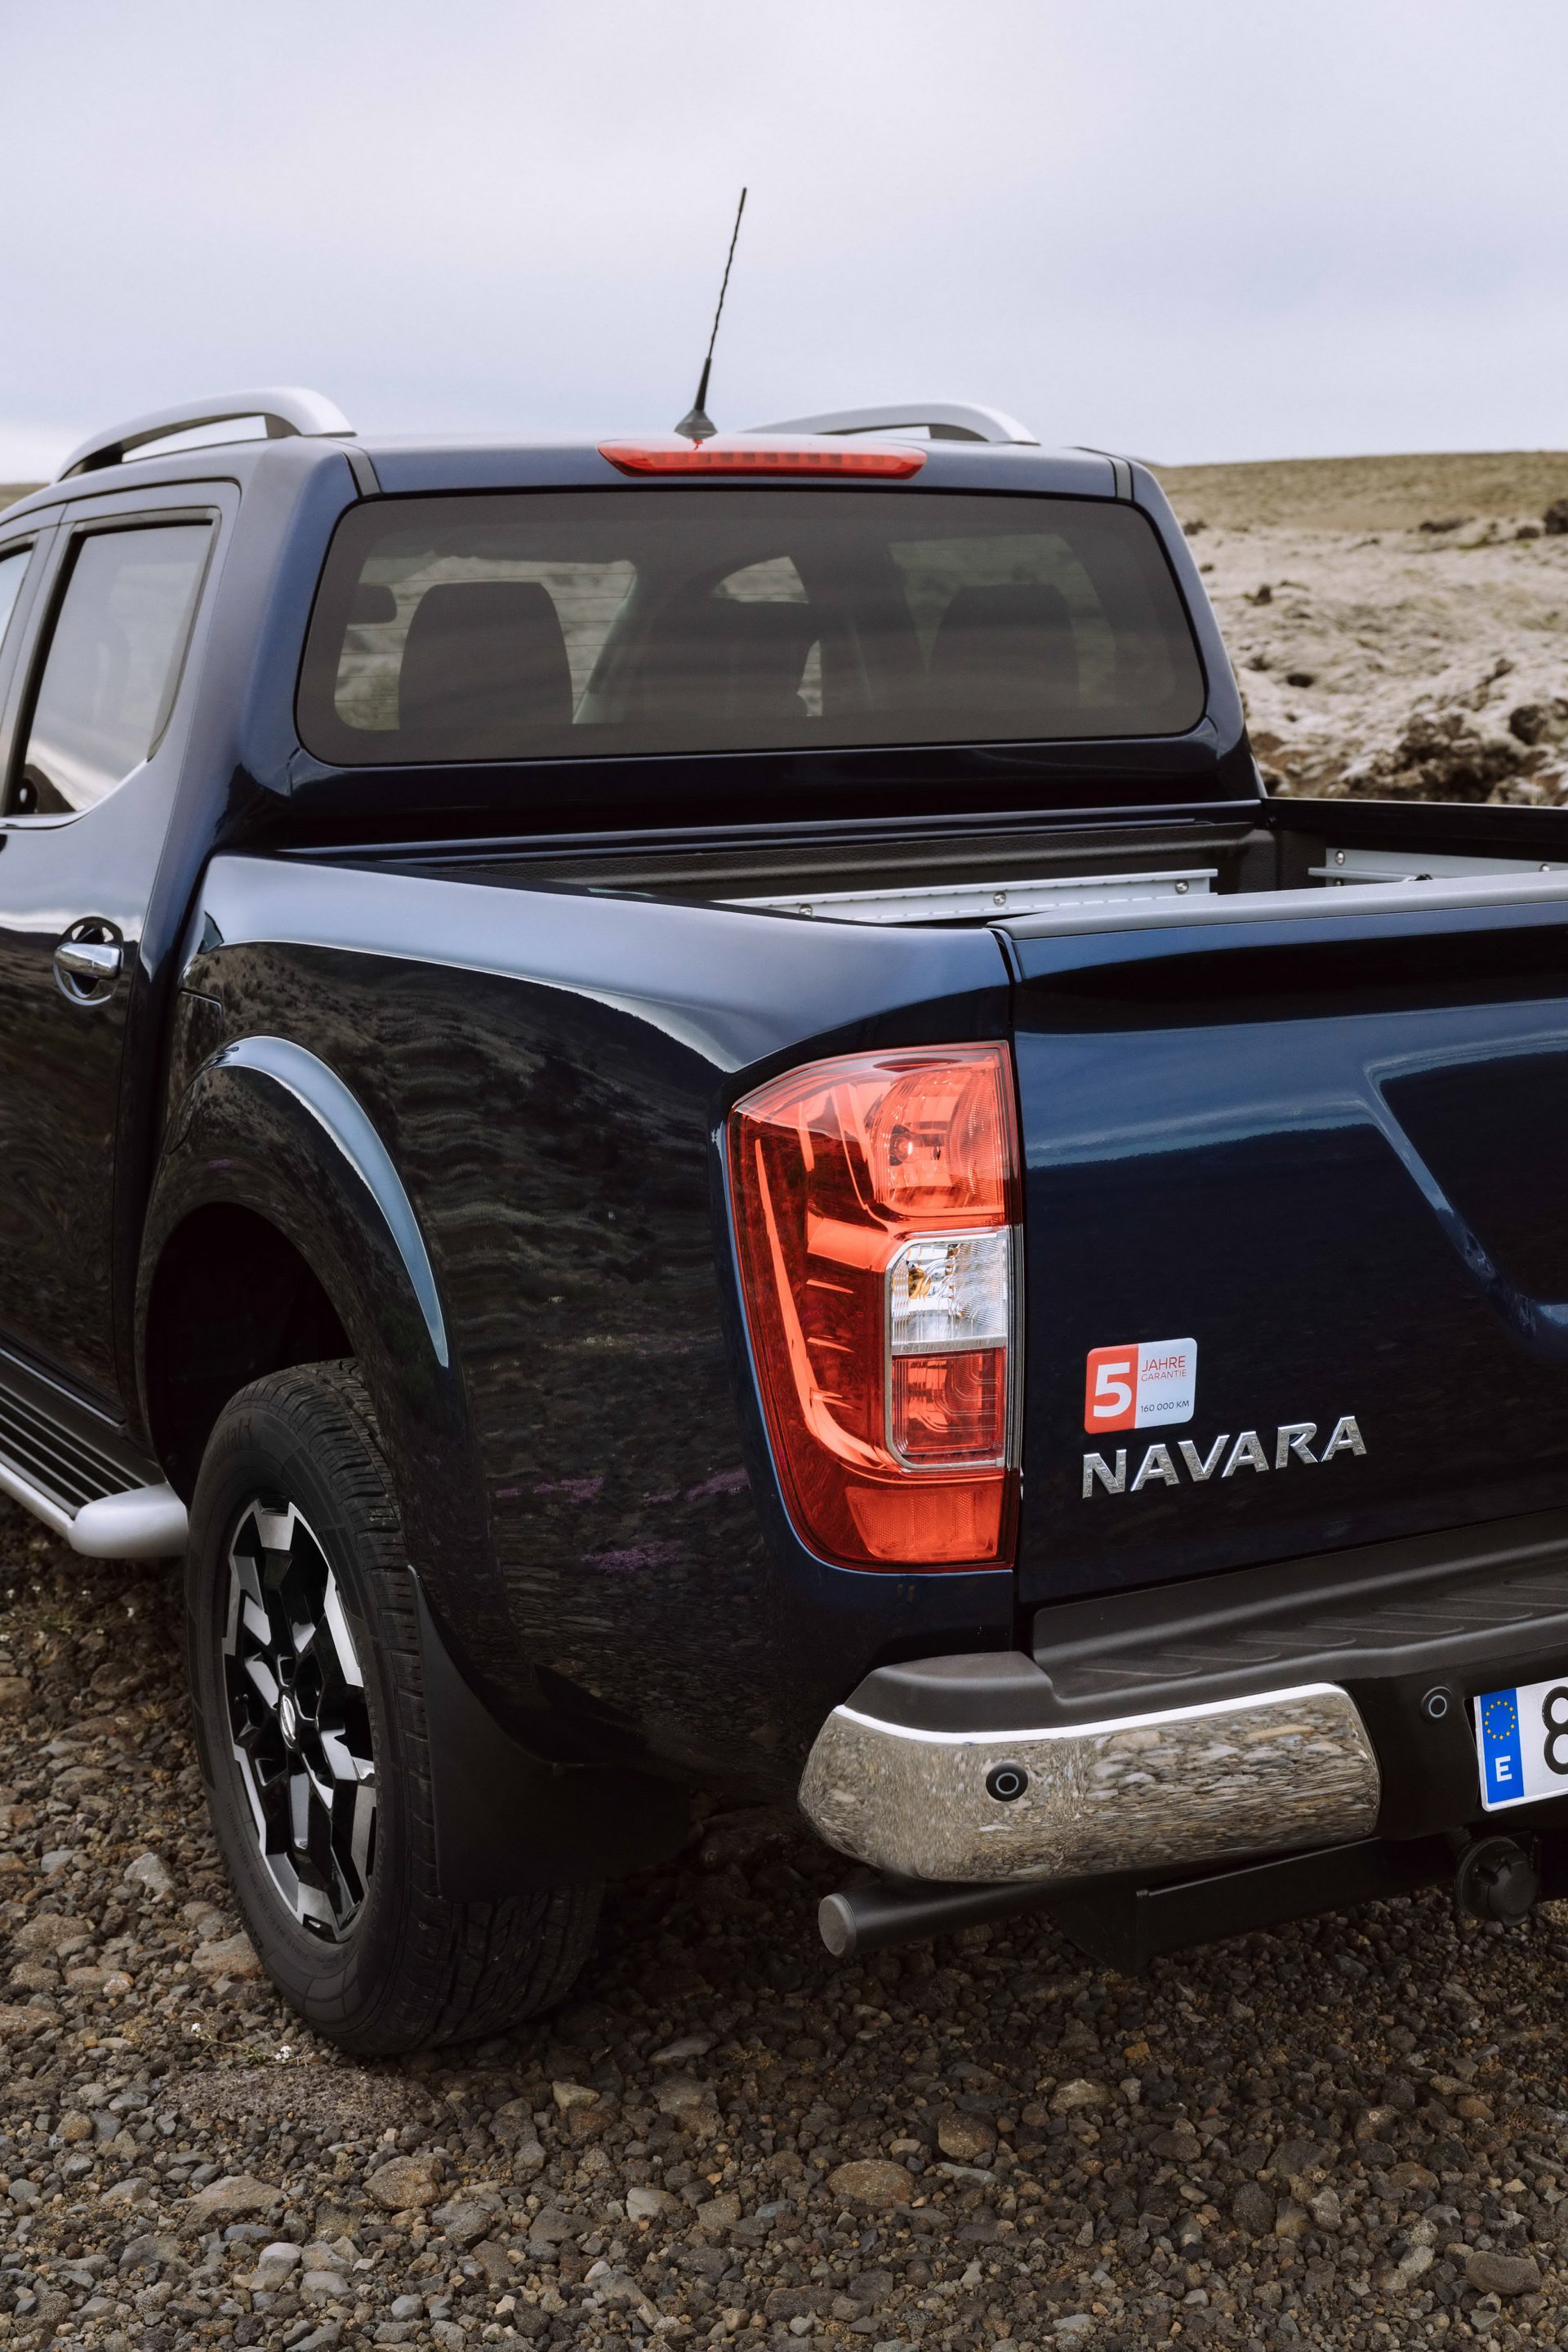 2019 Nissan Navara'nın detayları belli oldu: Daha konforlu ve daha verimli